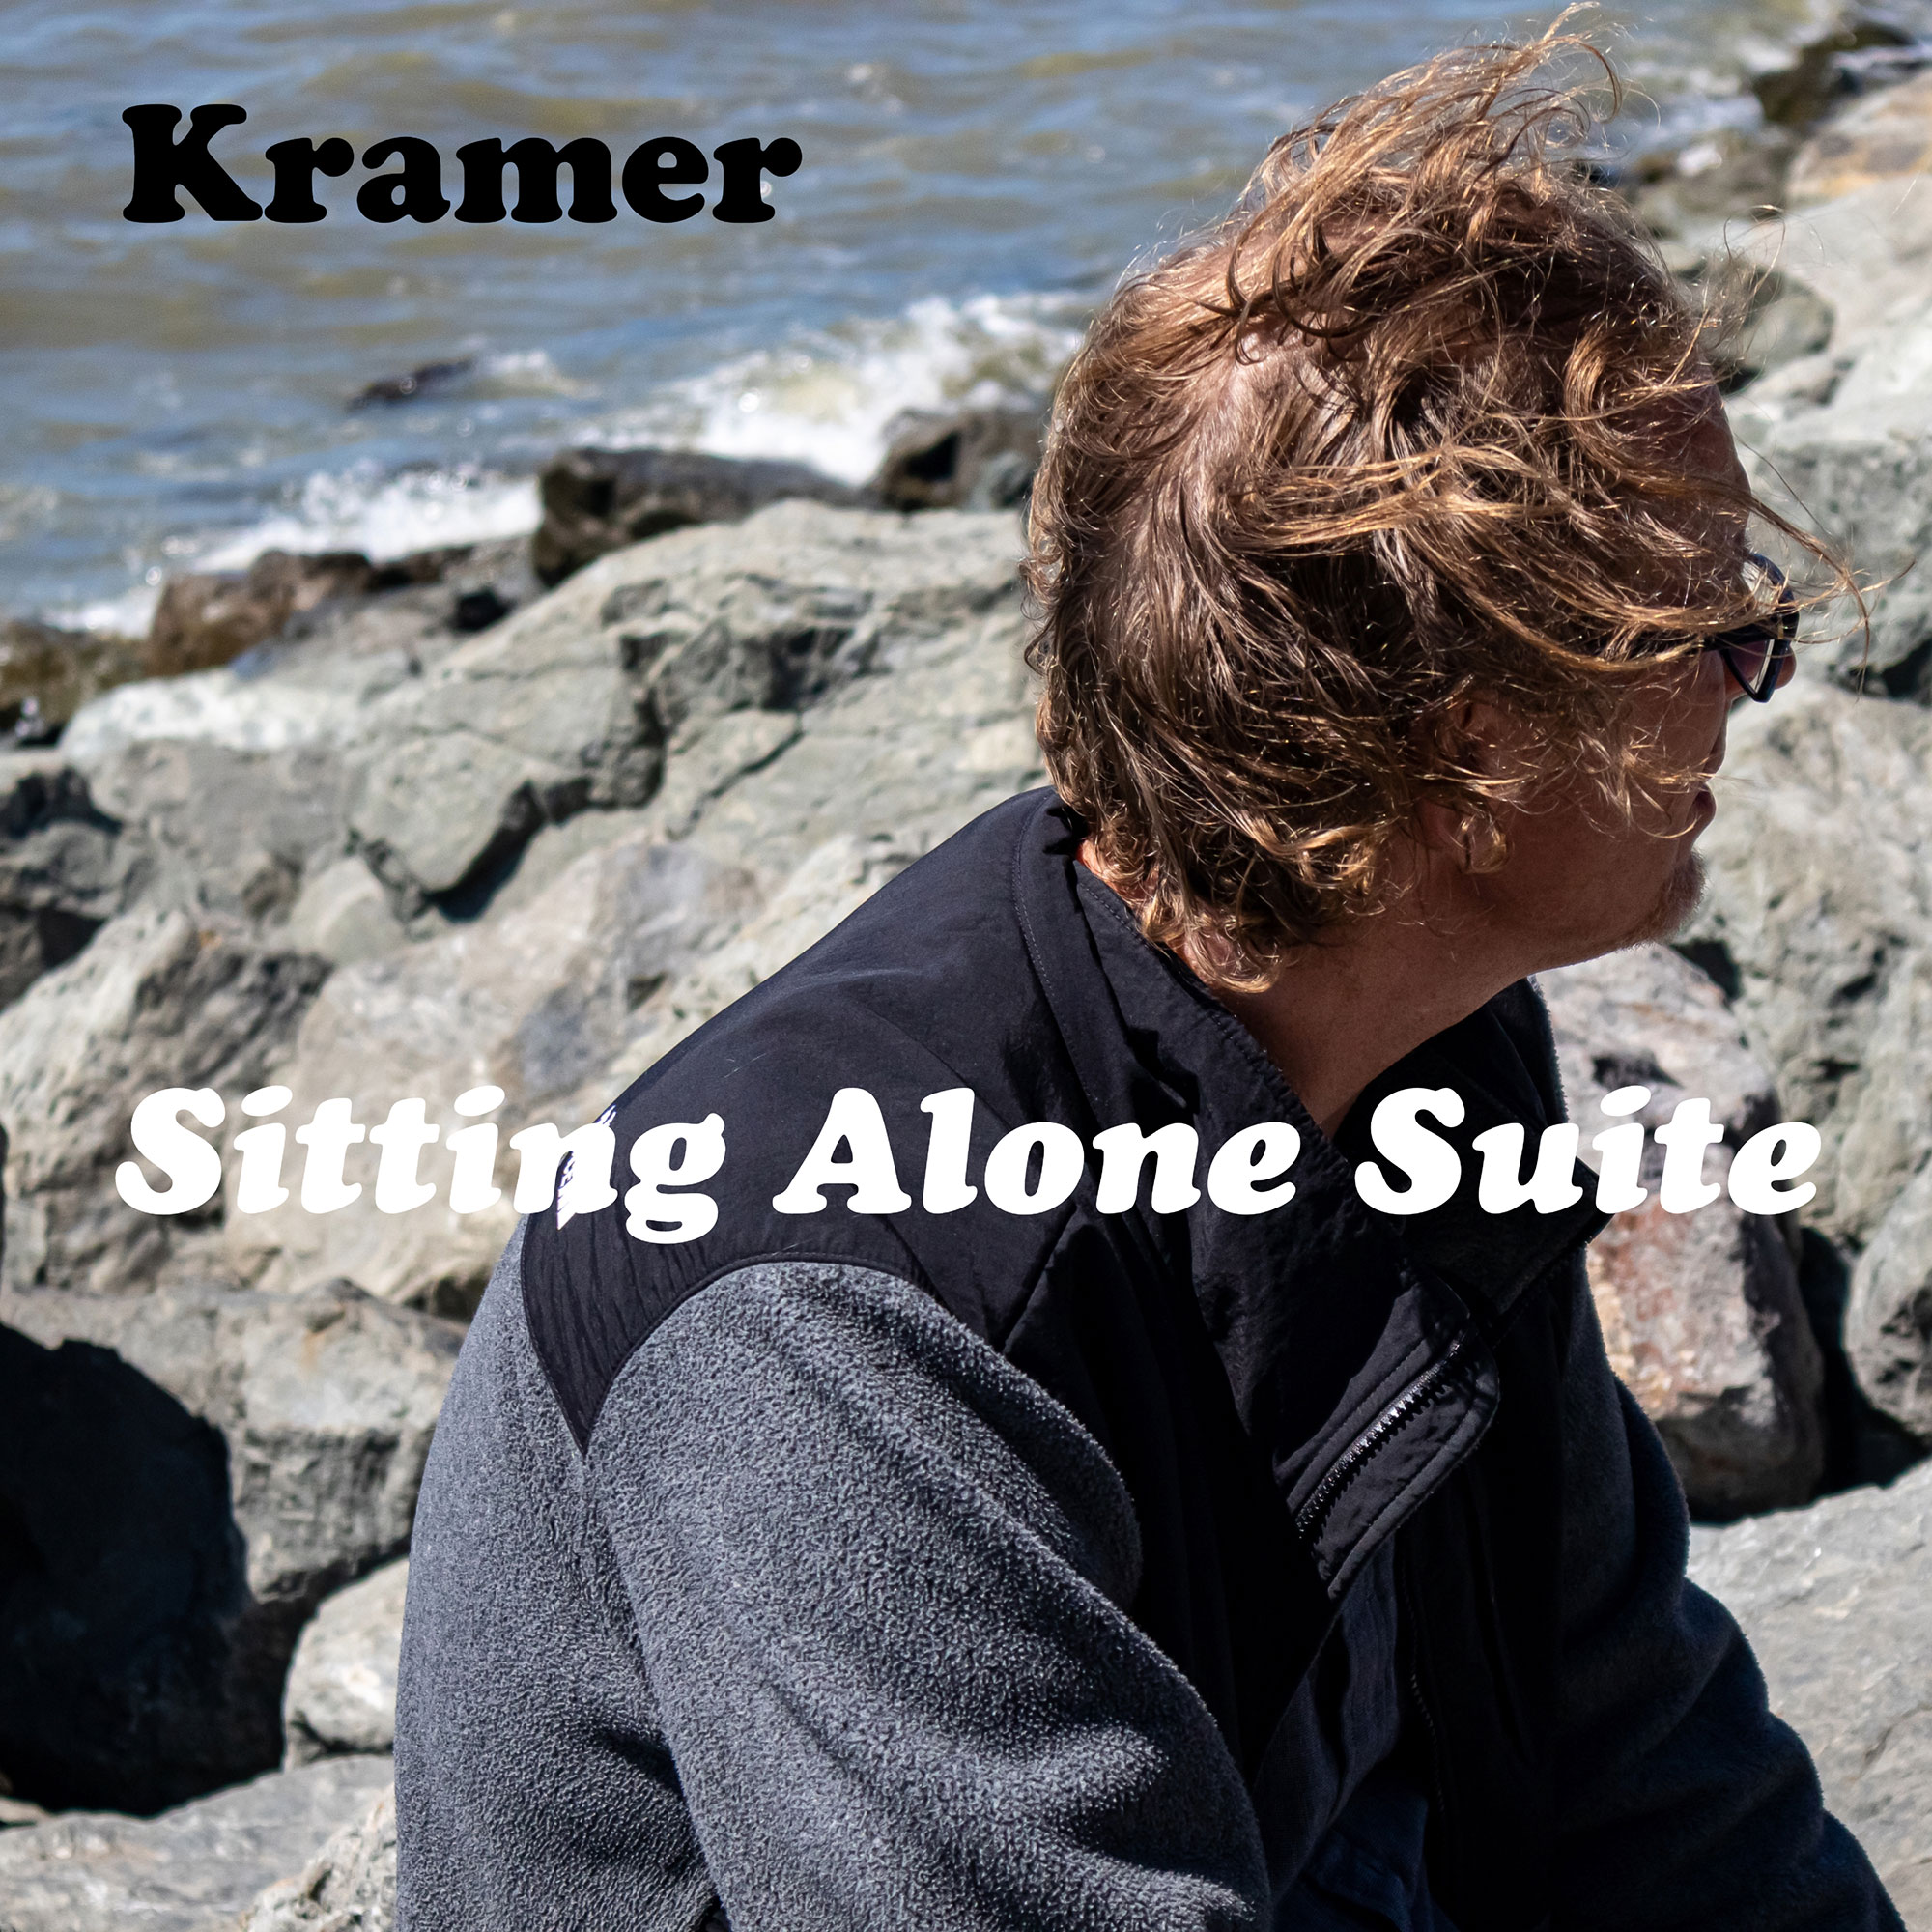  Kramer: un artista versátil y premiado que nos sorprende con su EP “Sitting Alone Suite”